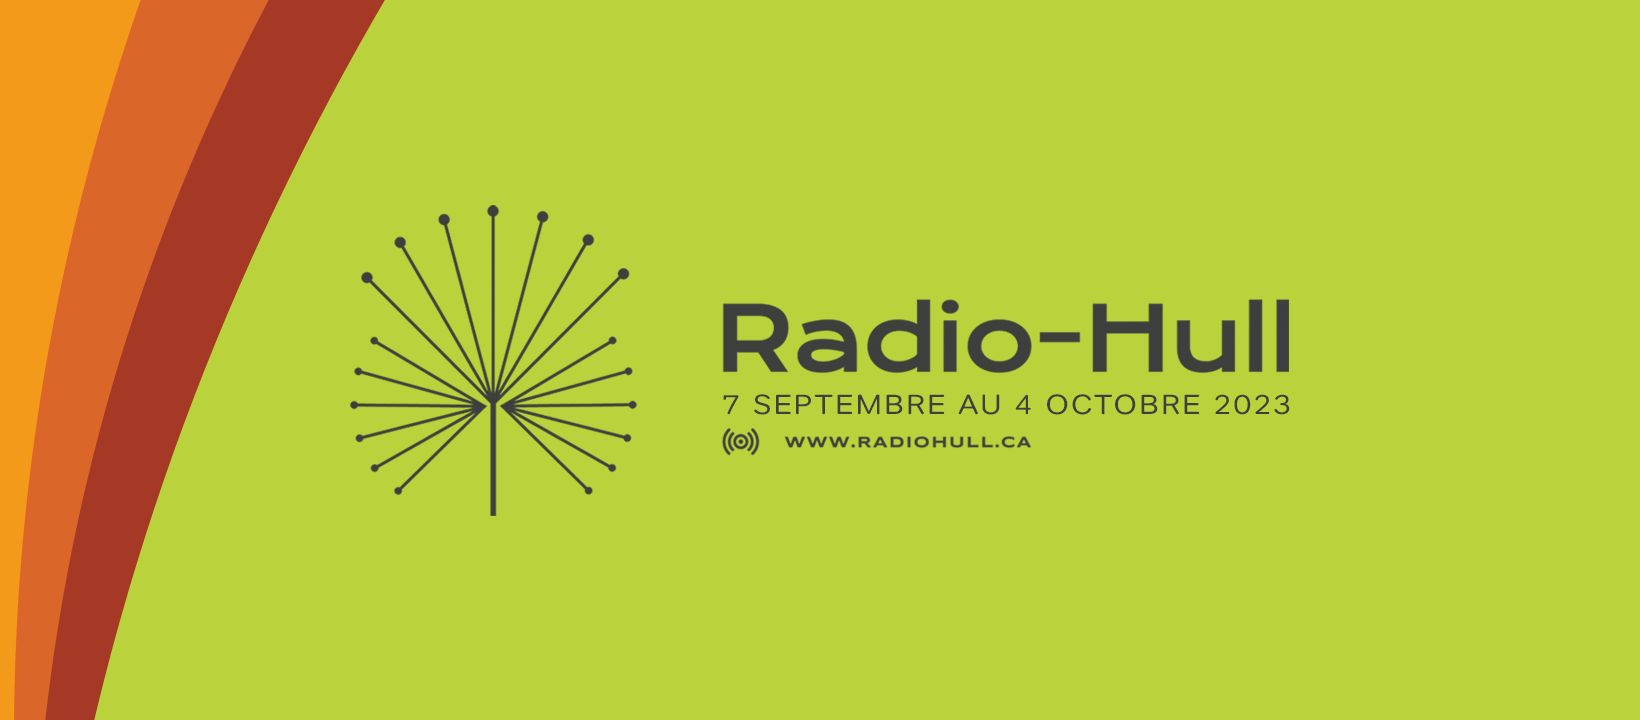 Communiqué de presse | Et c’est parti pour RADIO-HULL 2023!